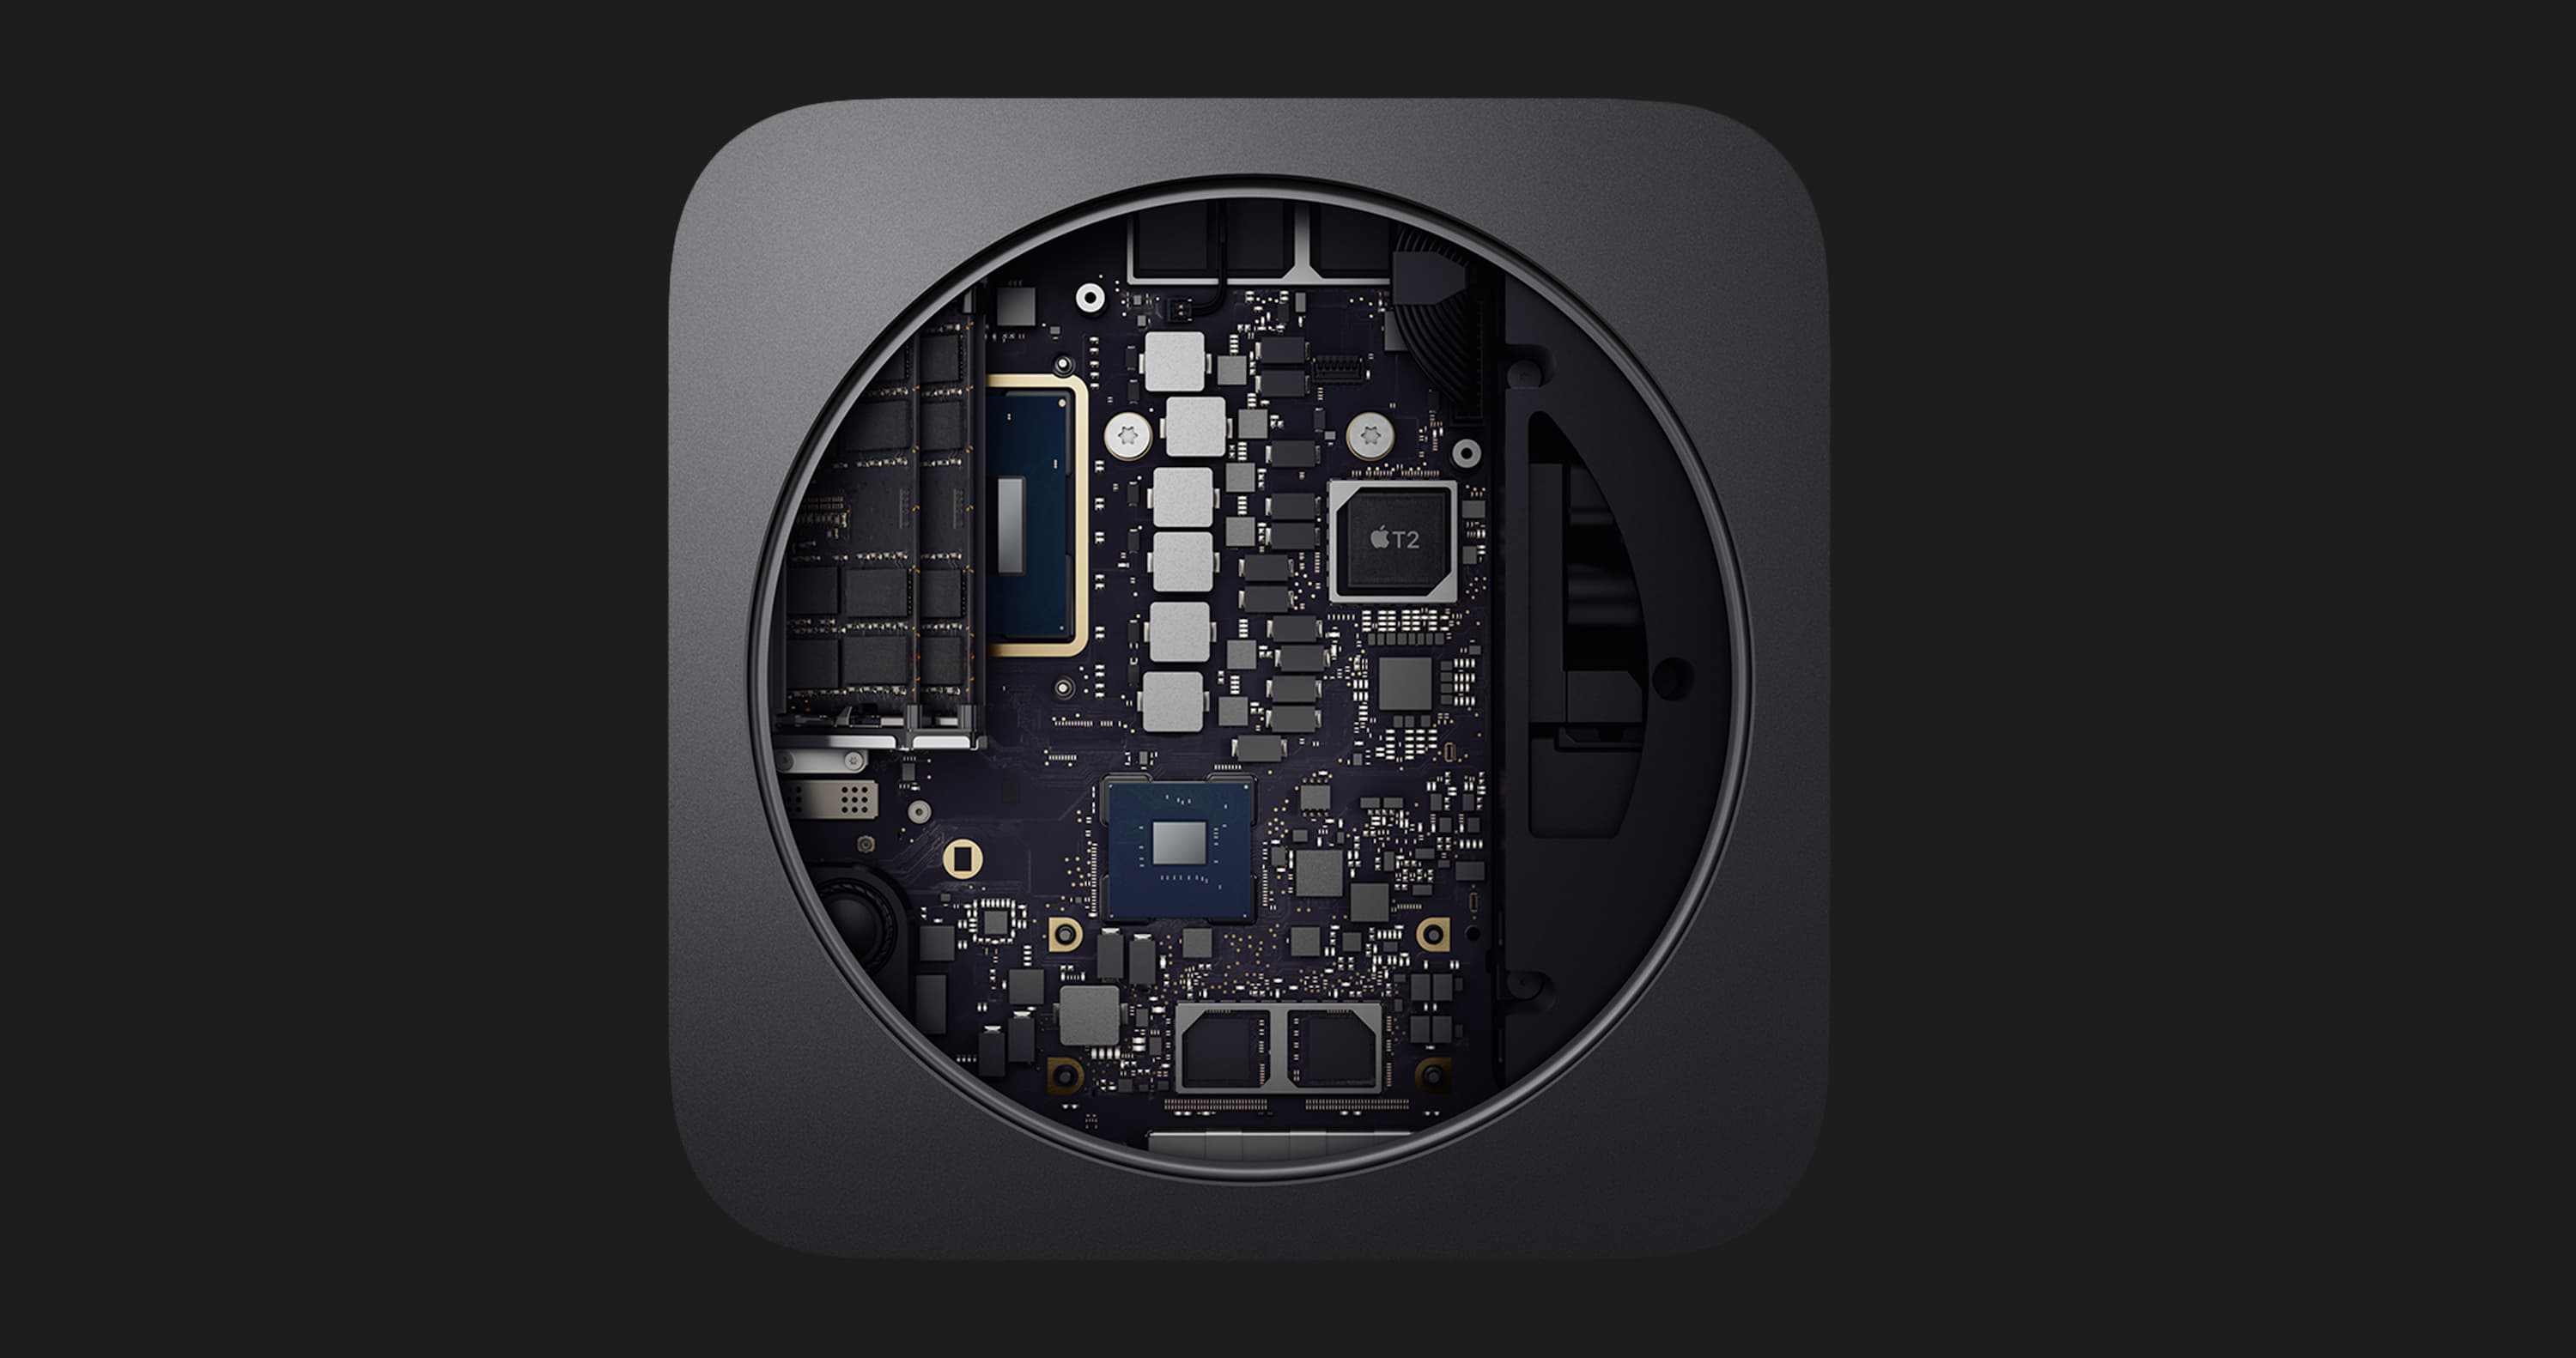 Apple Mac Mini, 512GB (MXNG2) 2020